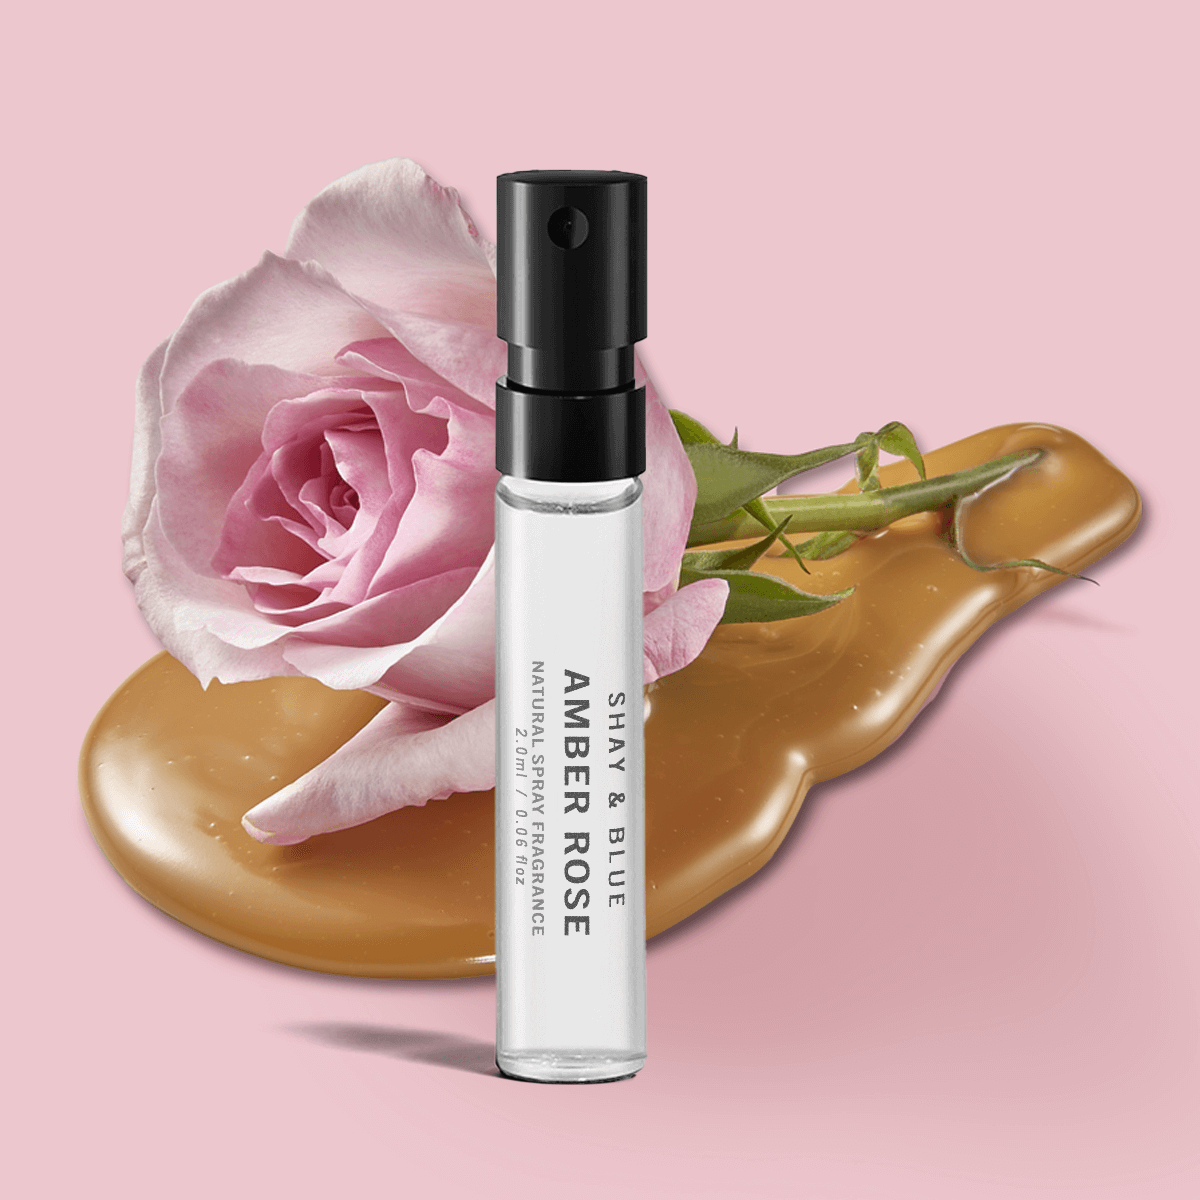 Amber Rose Fragrance 2ml | La nuova stagione della rosa di maggio si fonde con l'ambra bianca e dolci note cremose. | Fragranza pulita per tutti i generi | Shay & Blue